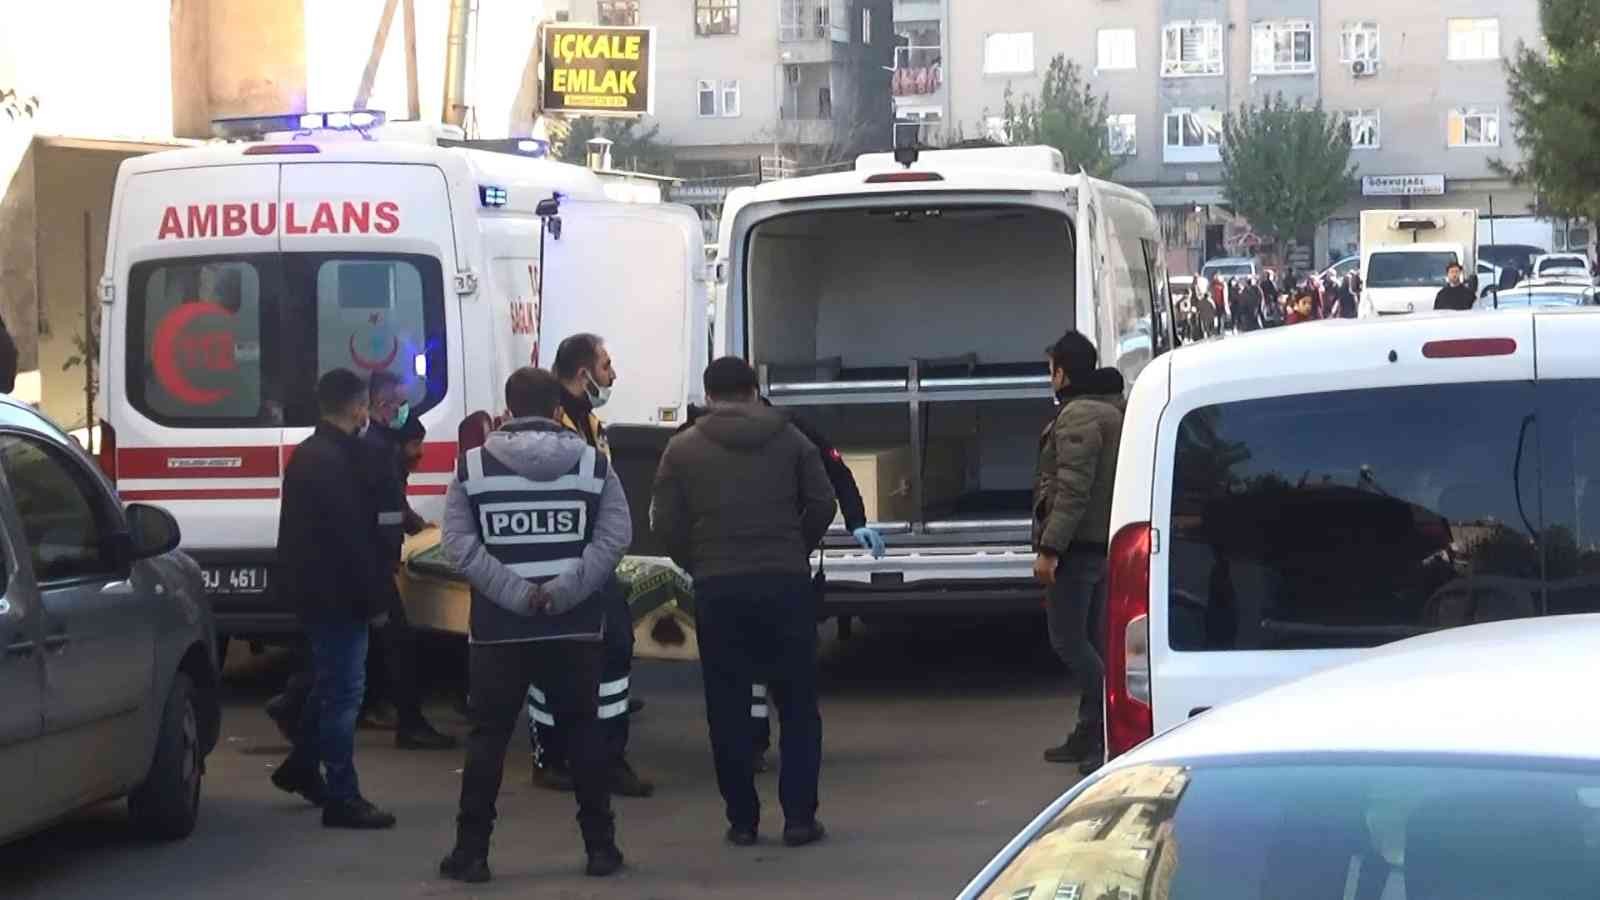 Diyarbakır’da ailesine dehşeti yaşatan katil zanlısının ilk ifadesi ortaya çıktı #diyarbakir